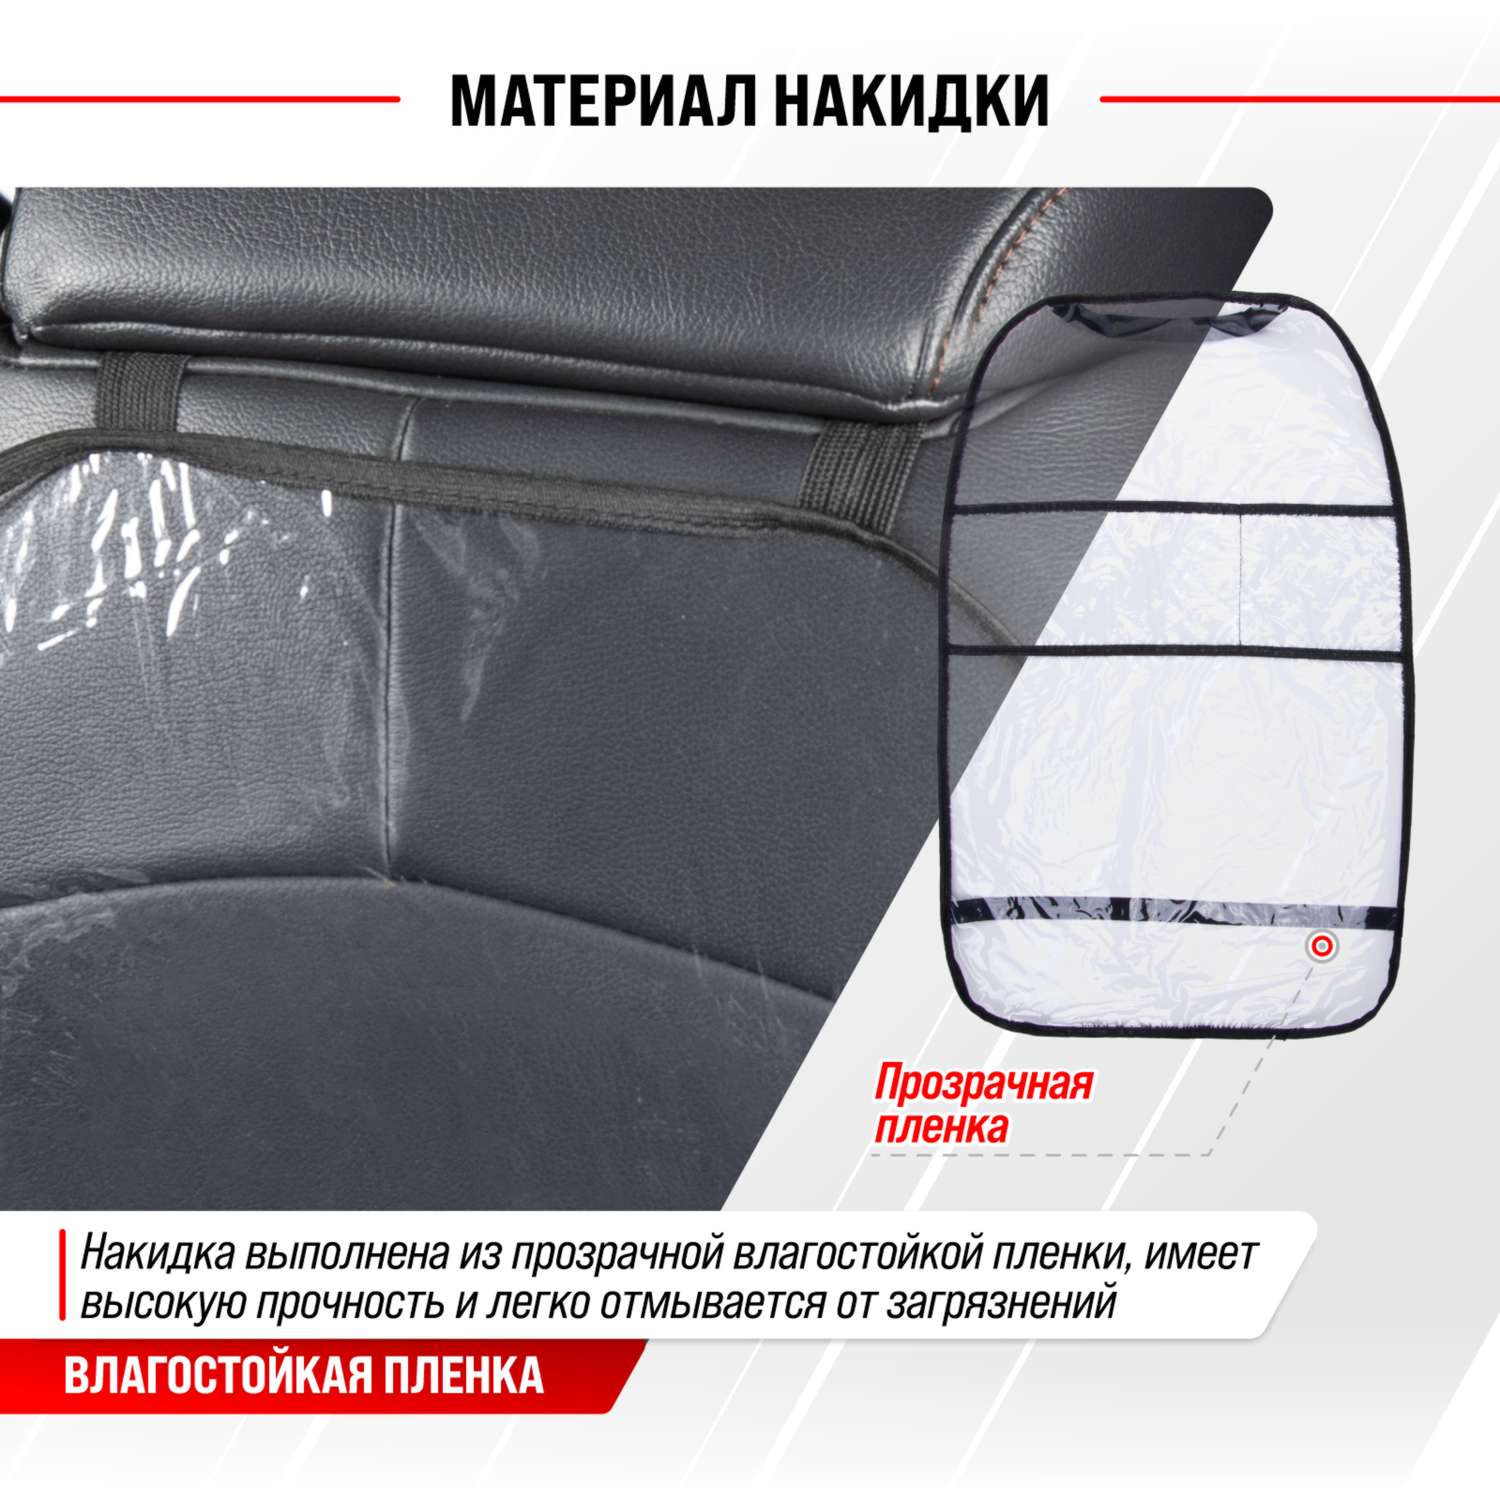 Защита спинки сиденья ПВХ SKYWAY 60*38см с карманами прозрачная пленка 100 мкм - фото 4